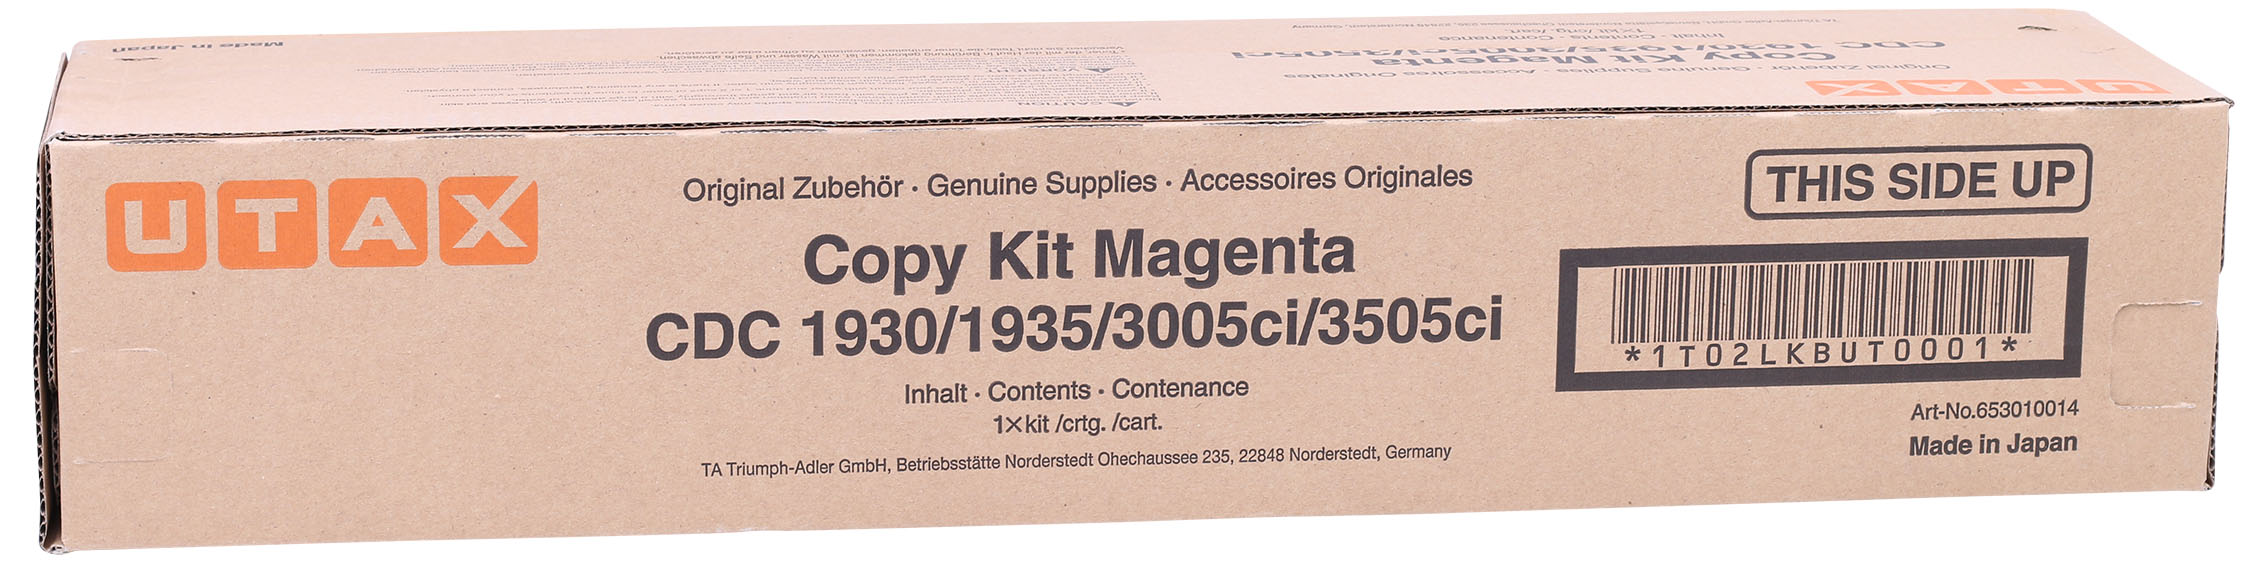 Copy Kit Utax Magenta 3005ci 3505ci Cdc 1930 1935 653010014 1t02lkbut0001